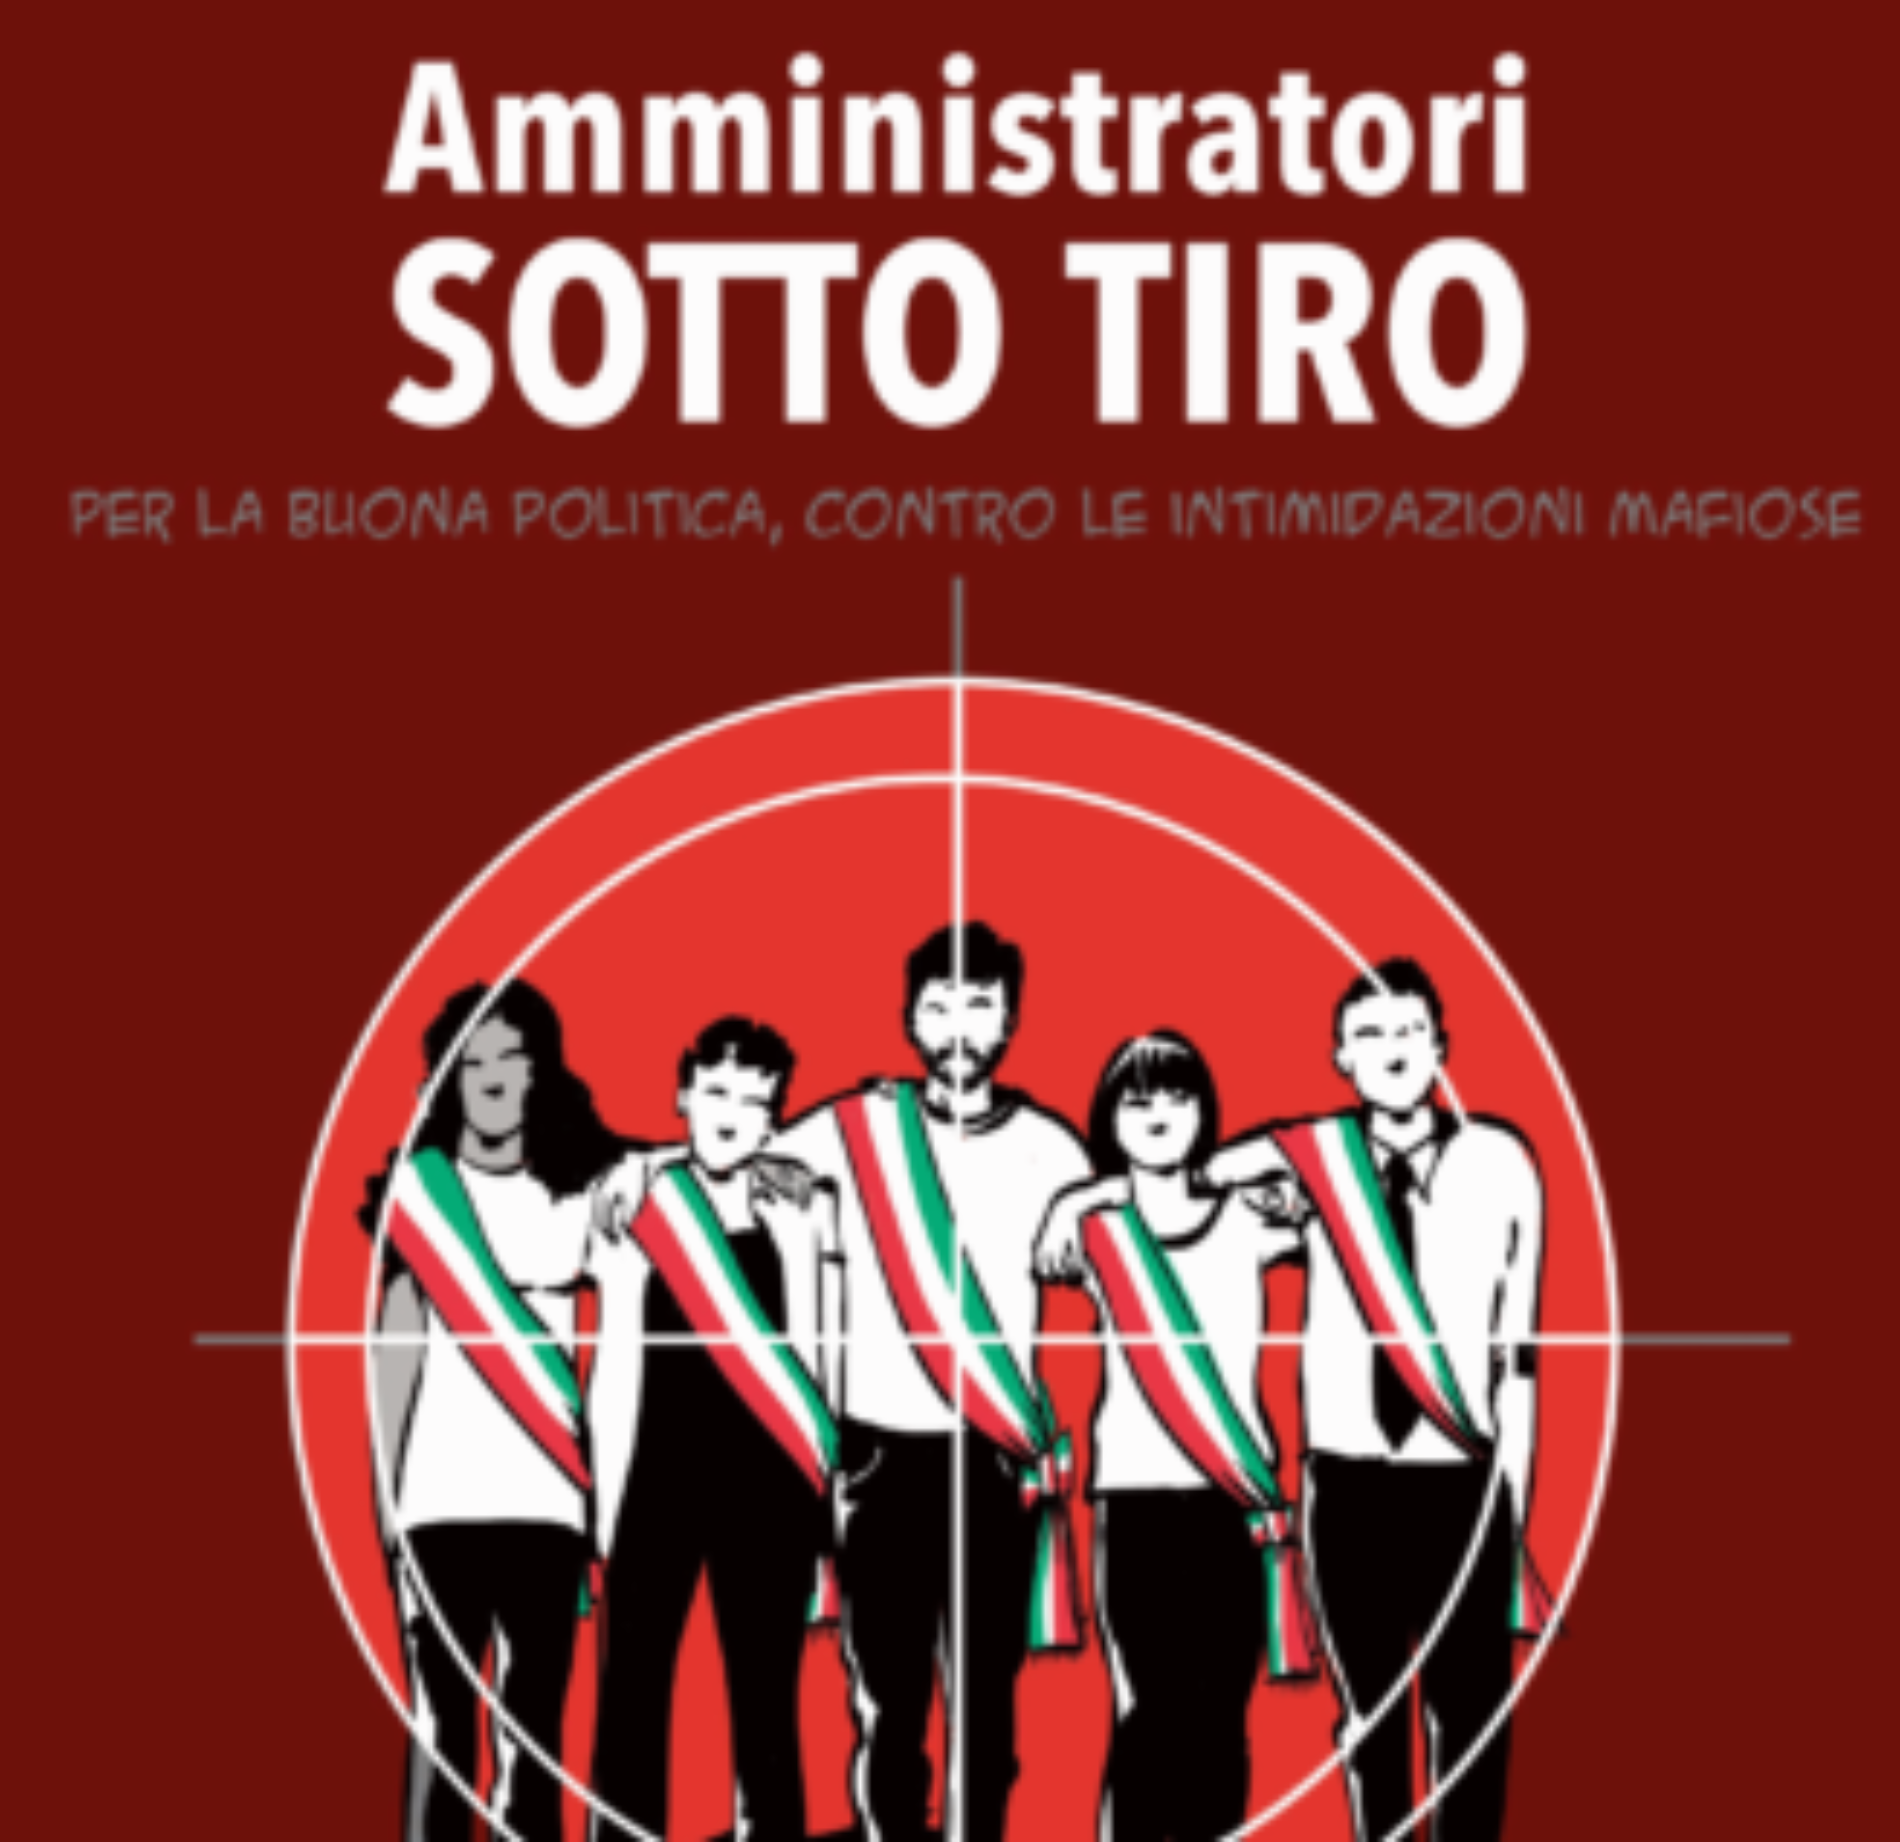 Roma. Presentata l’ottava edizione del Rapporto “Amministratori sotto tiro”.